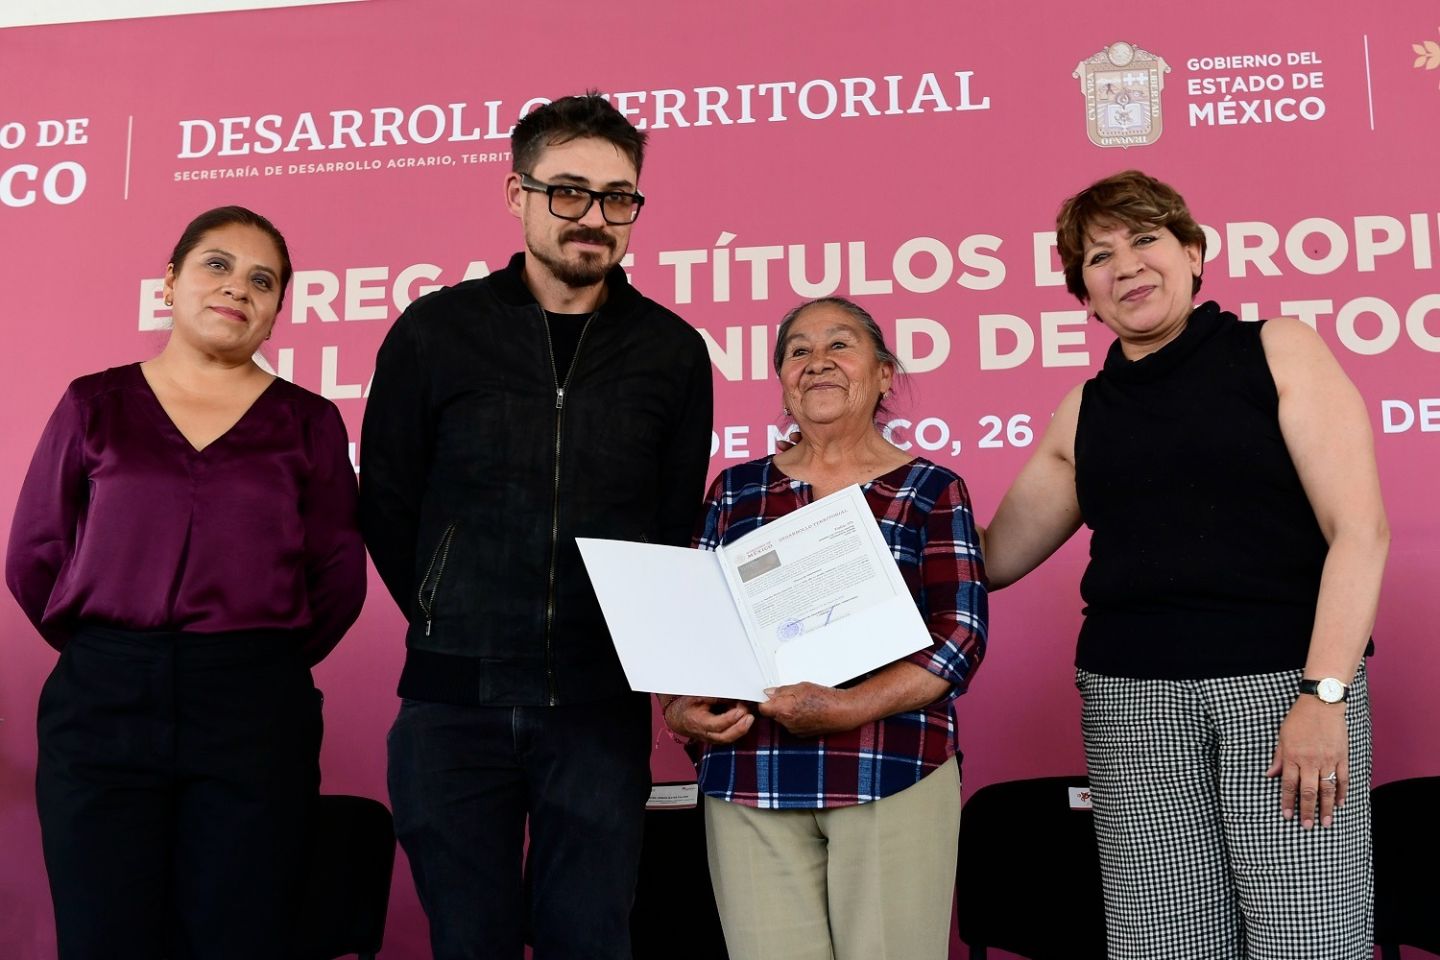 Gobernadora Delfina Gómez otorga seguridad jurídica a las familias mexiquenses, entrega 402 títulos de propiedad en Nextlalpan
